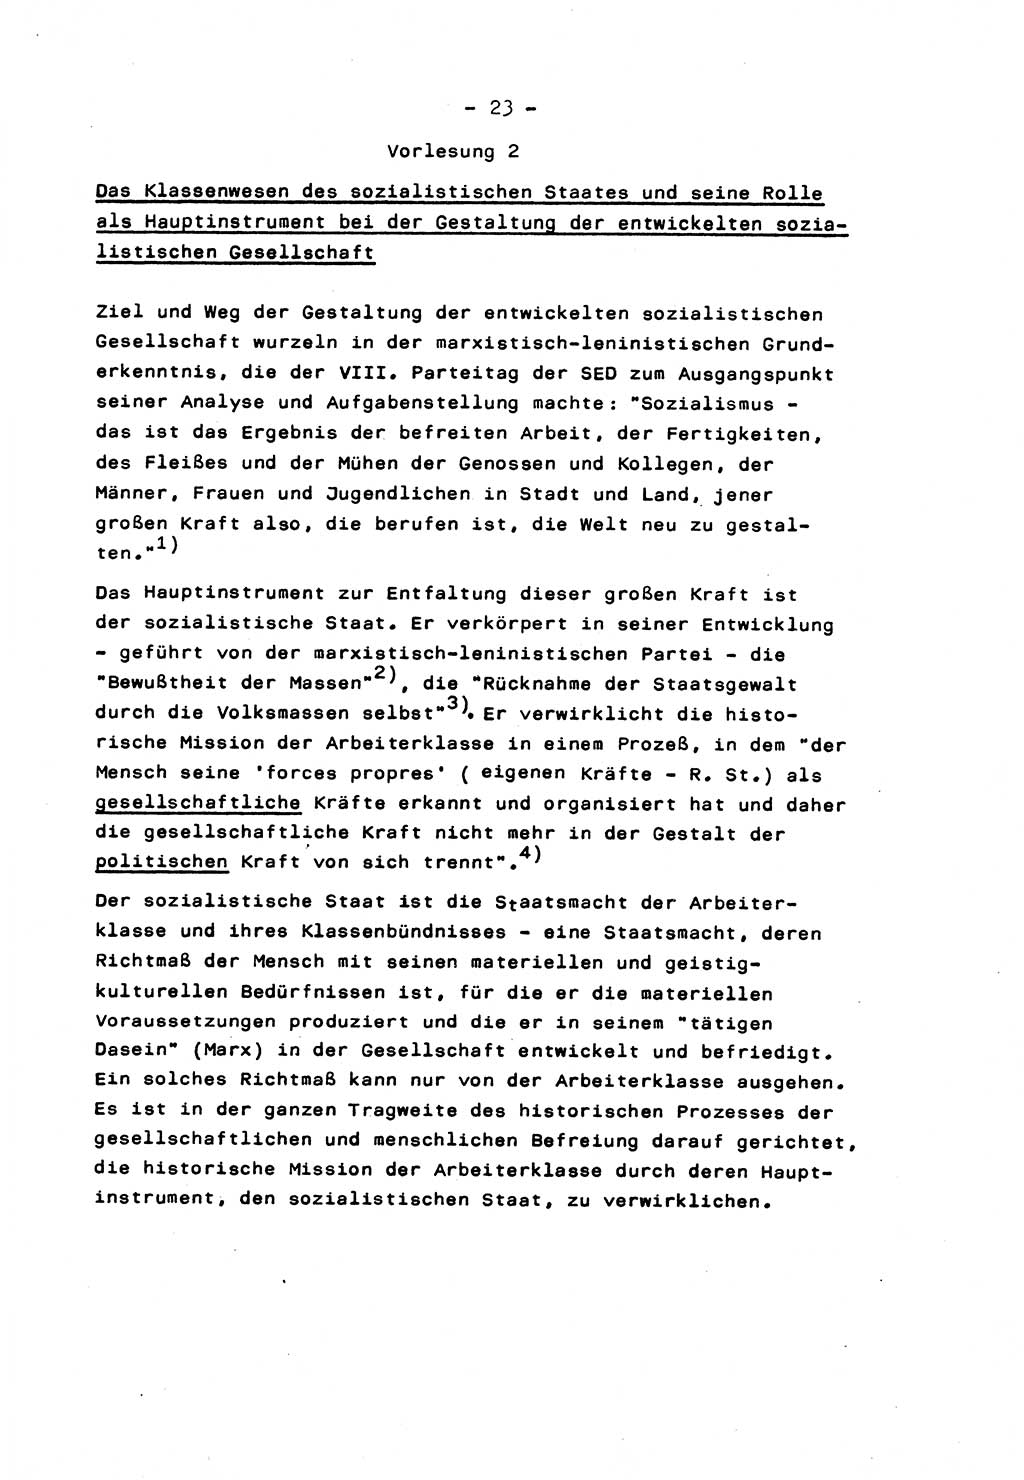 Marxistisch-leninistische Staats- und Rechtstheorie [Deutsche Demokratische Republik (DDR)] 1975, Seite 23 (ML St.-R.-Th. DDR 1975, S. 23)